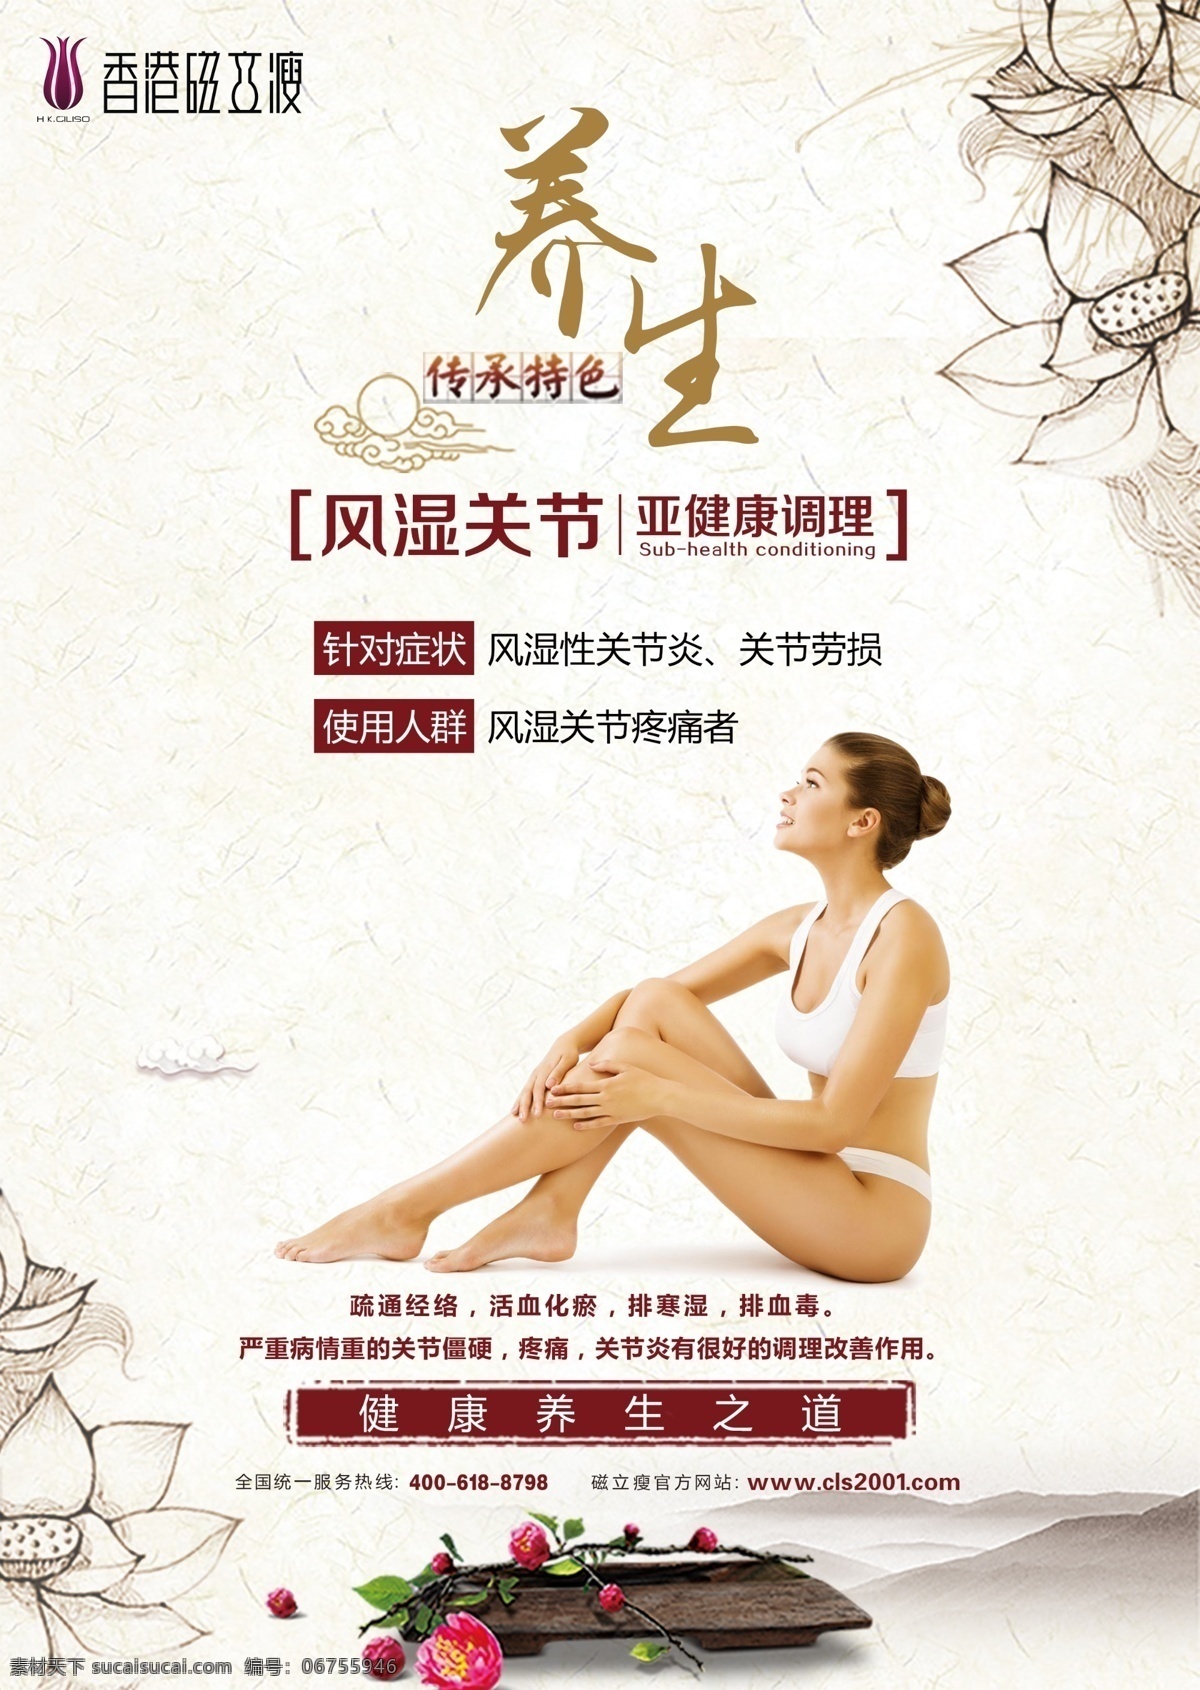 香港 磁力 瘦 风湿 关节 磁力瘦 宫颈 养生 女性 妇科 健康 妇女 传统 调理 广告 宣传画 宣传单 广告类型